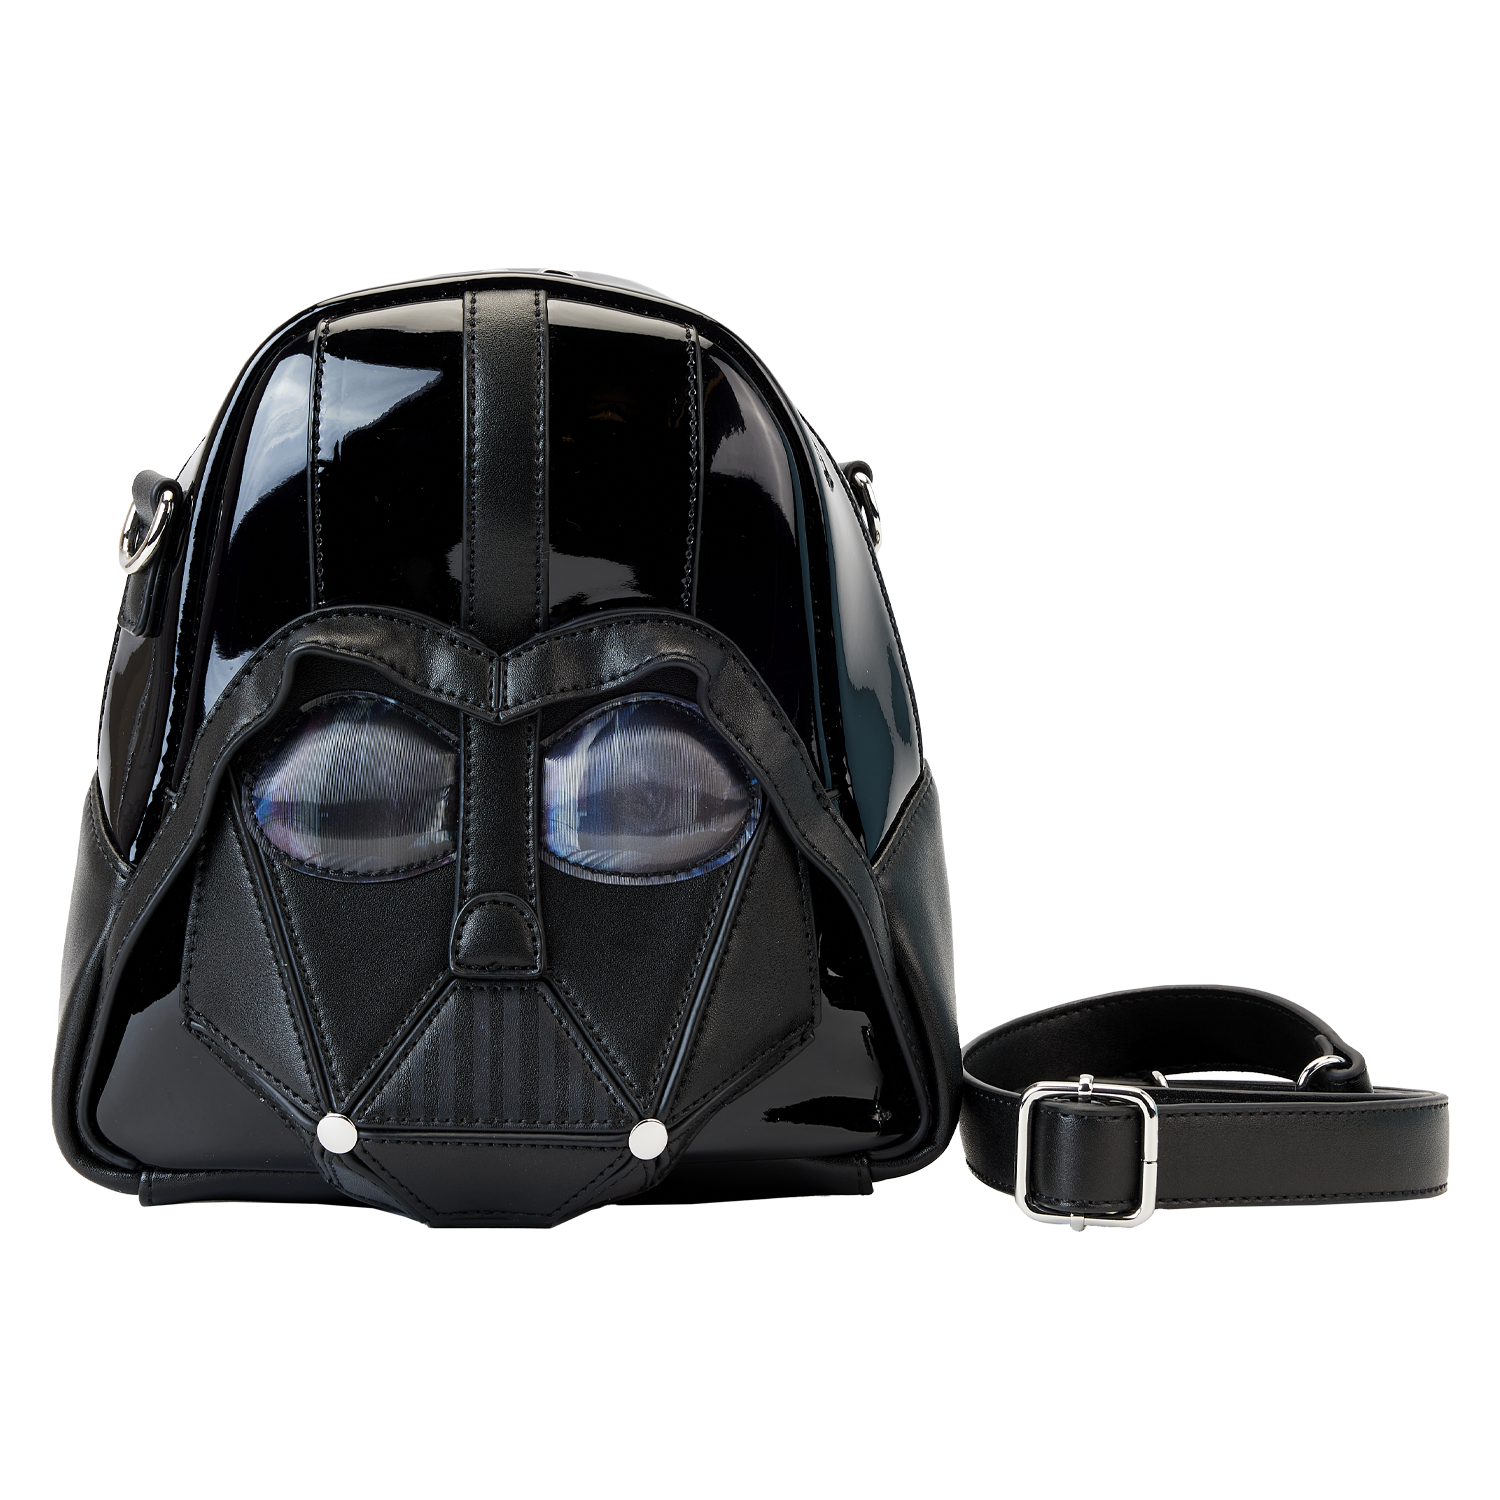 Star Wars Darth Vader Figural Helmet Cross Body